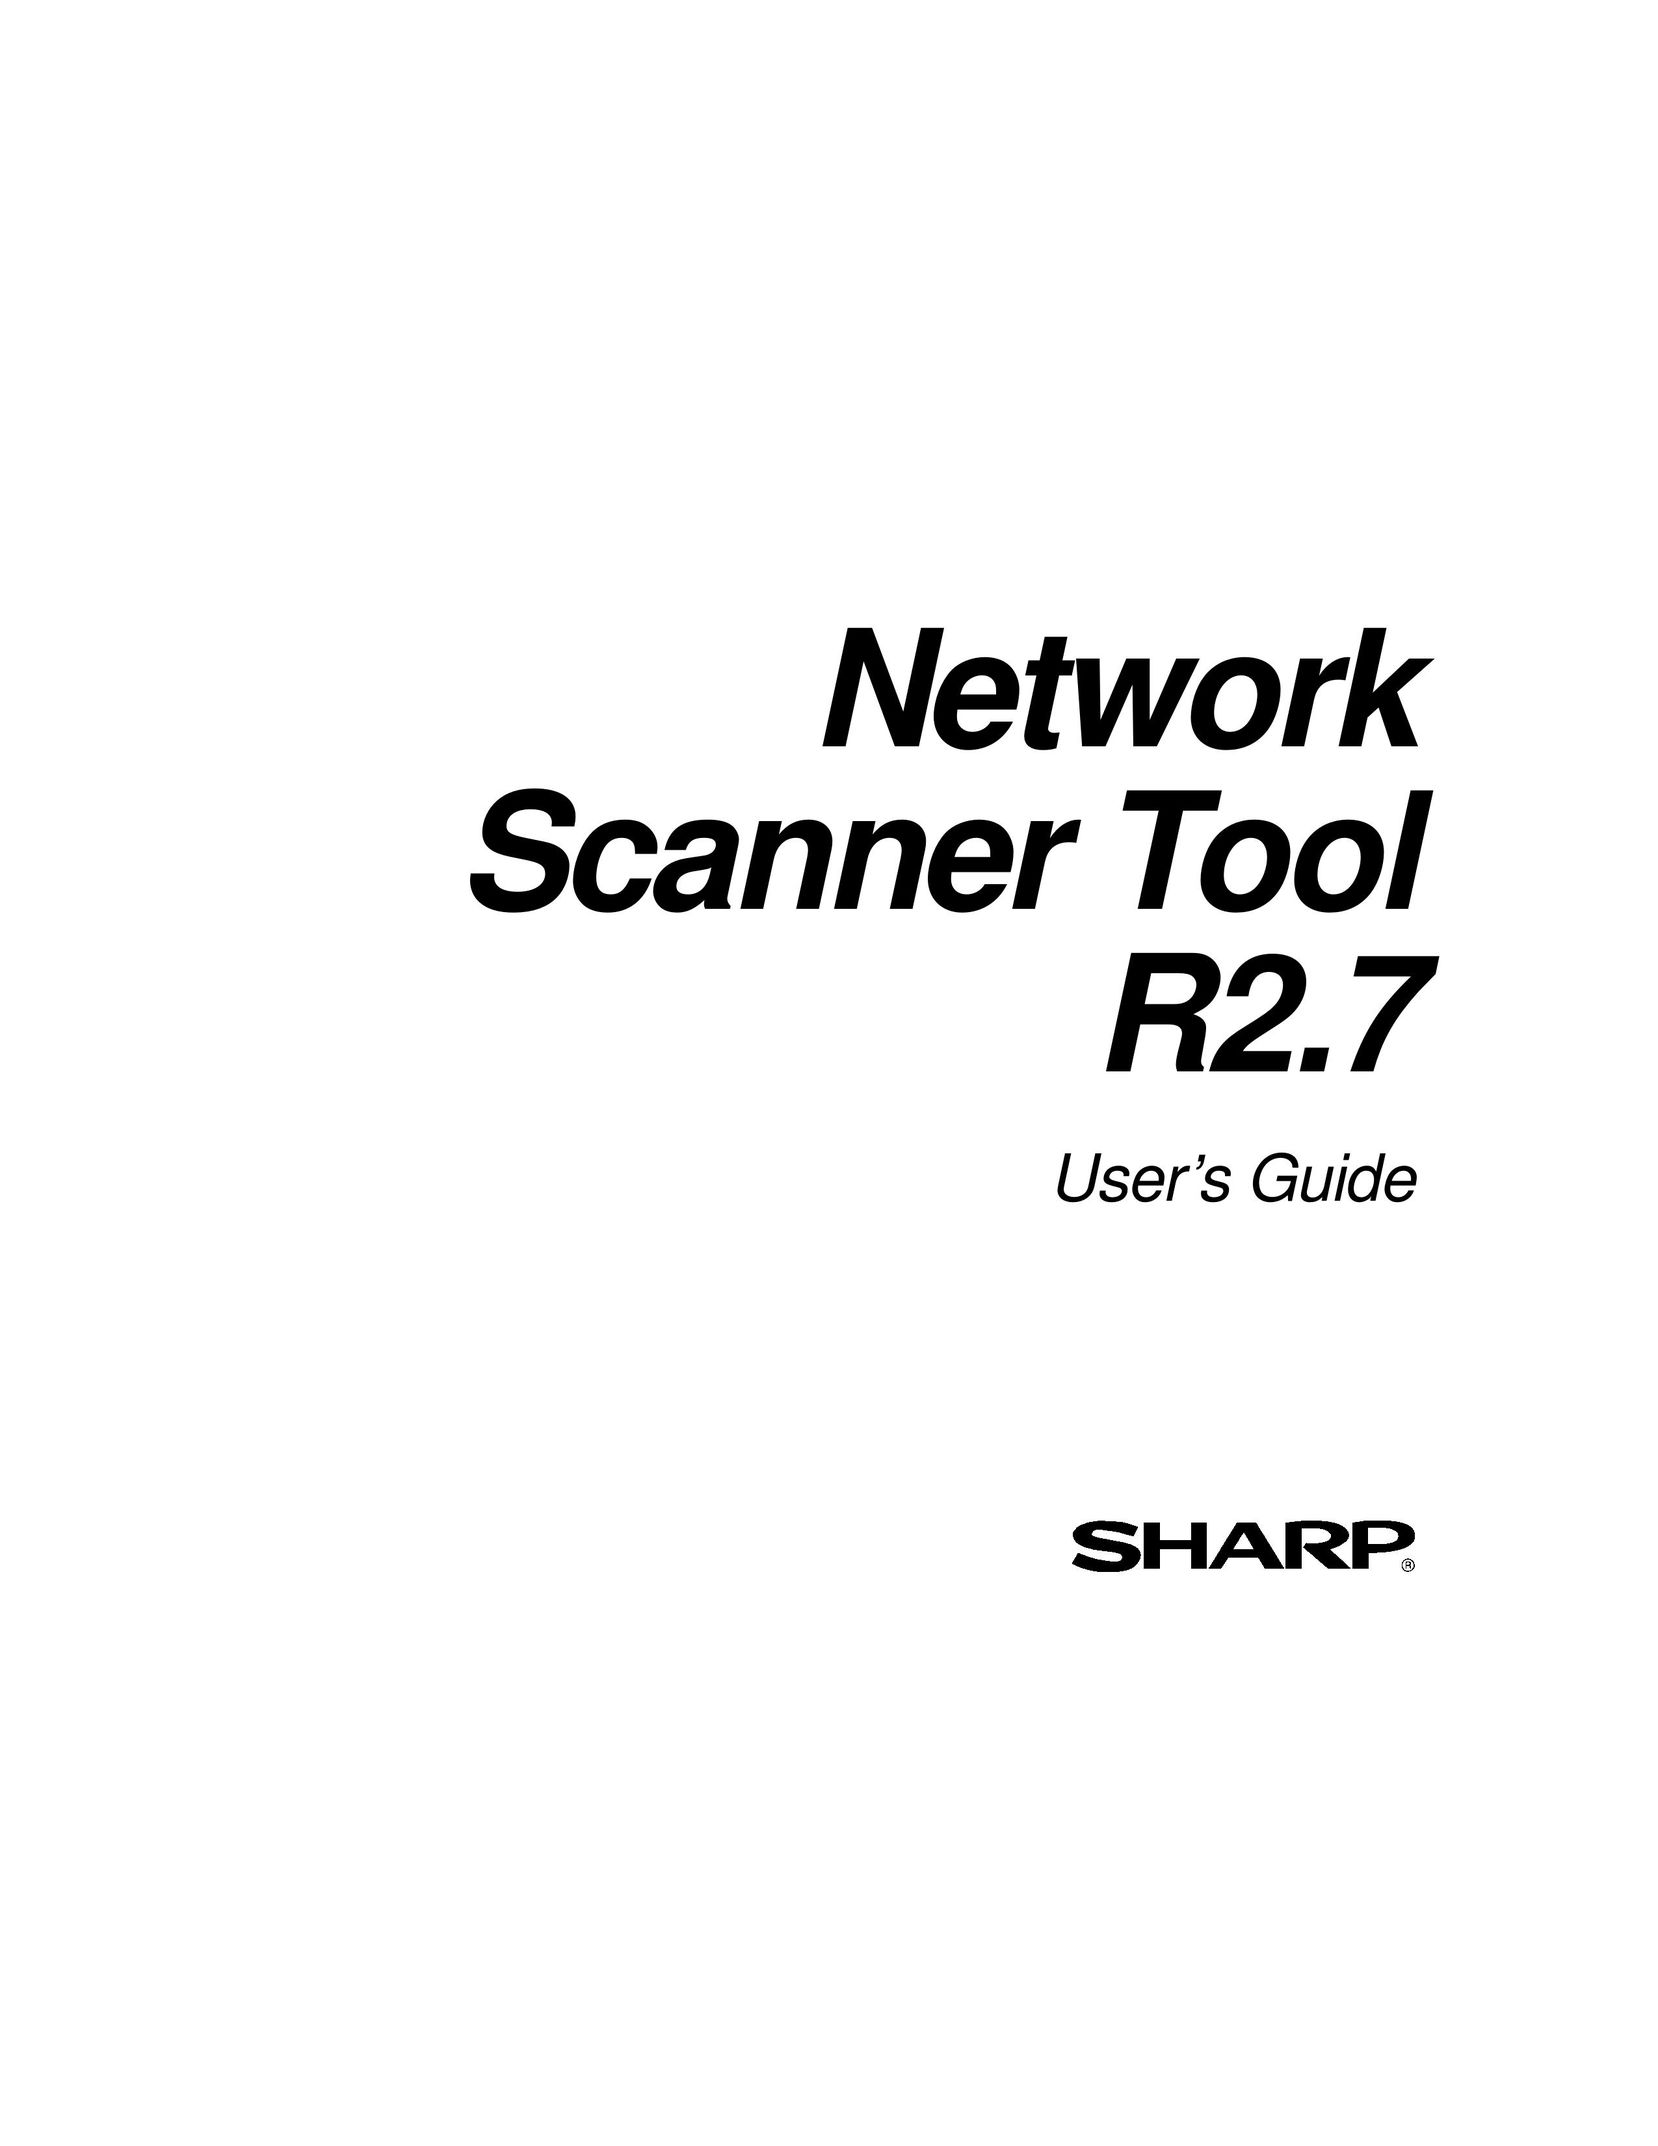 Sharp R2.7 Scanner User Manual